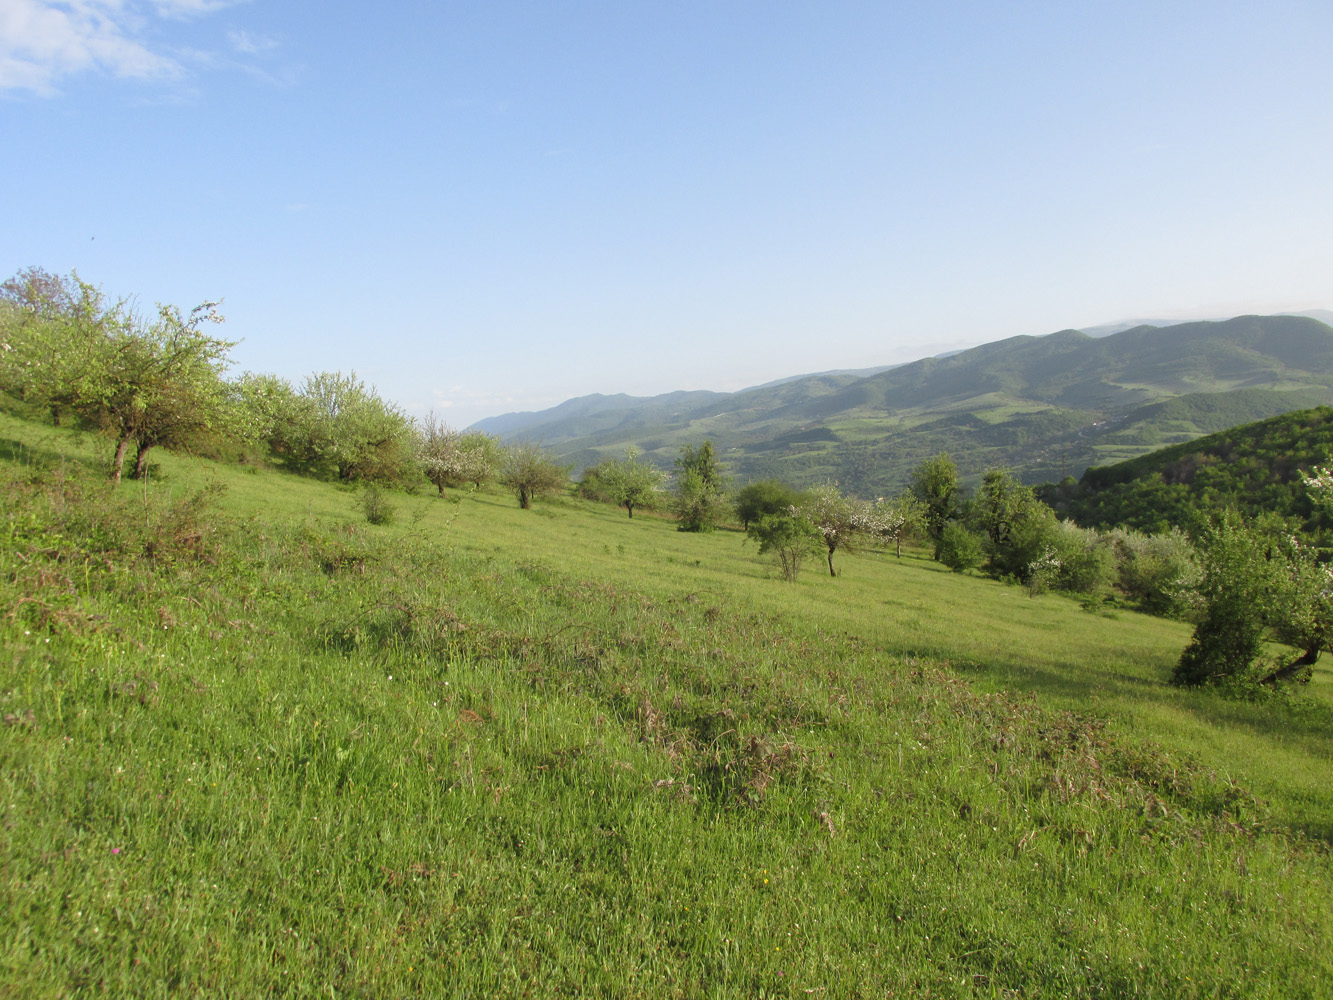 Окрестности села Татиль, изображение ландшафта.